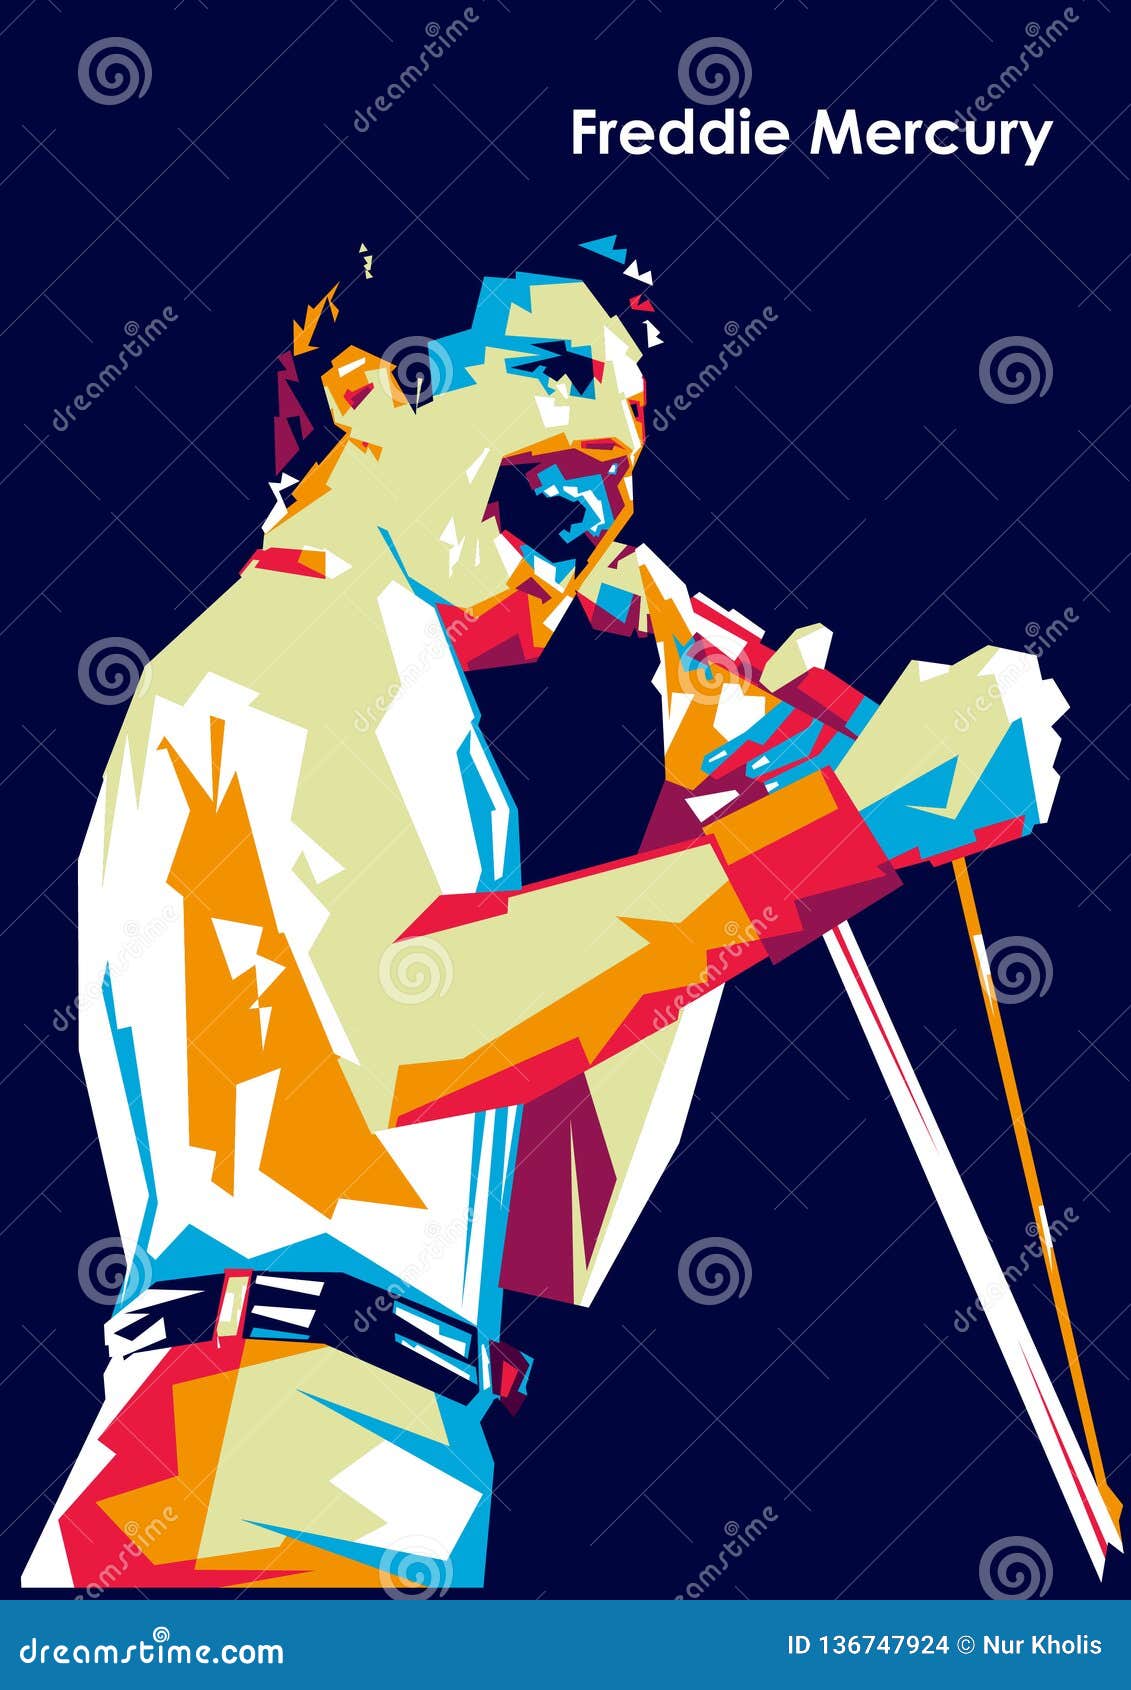 Freddie mercury pop art